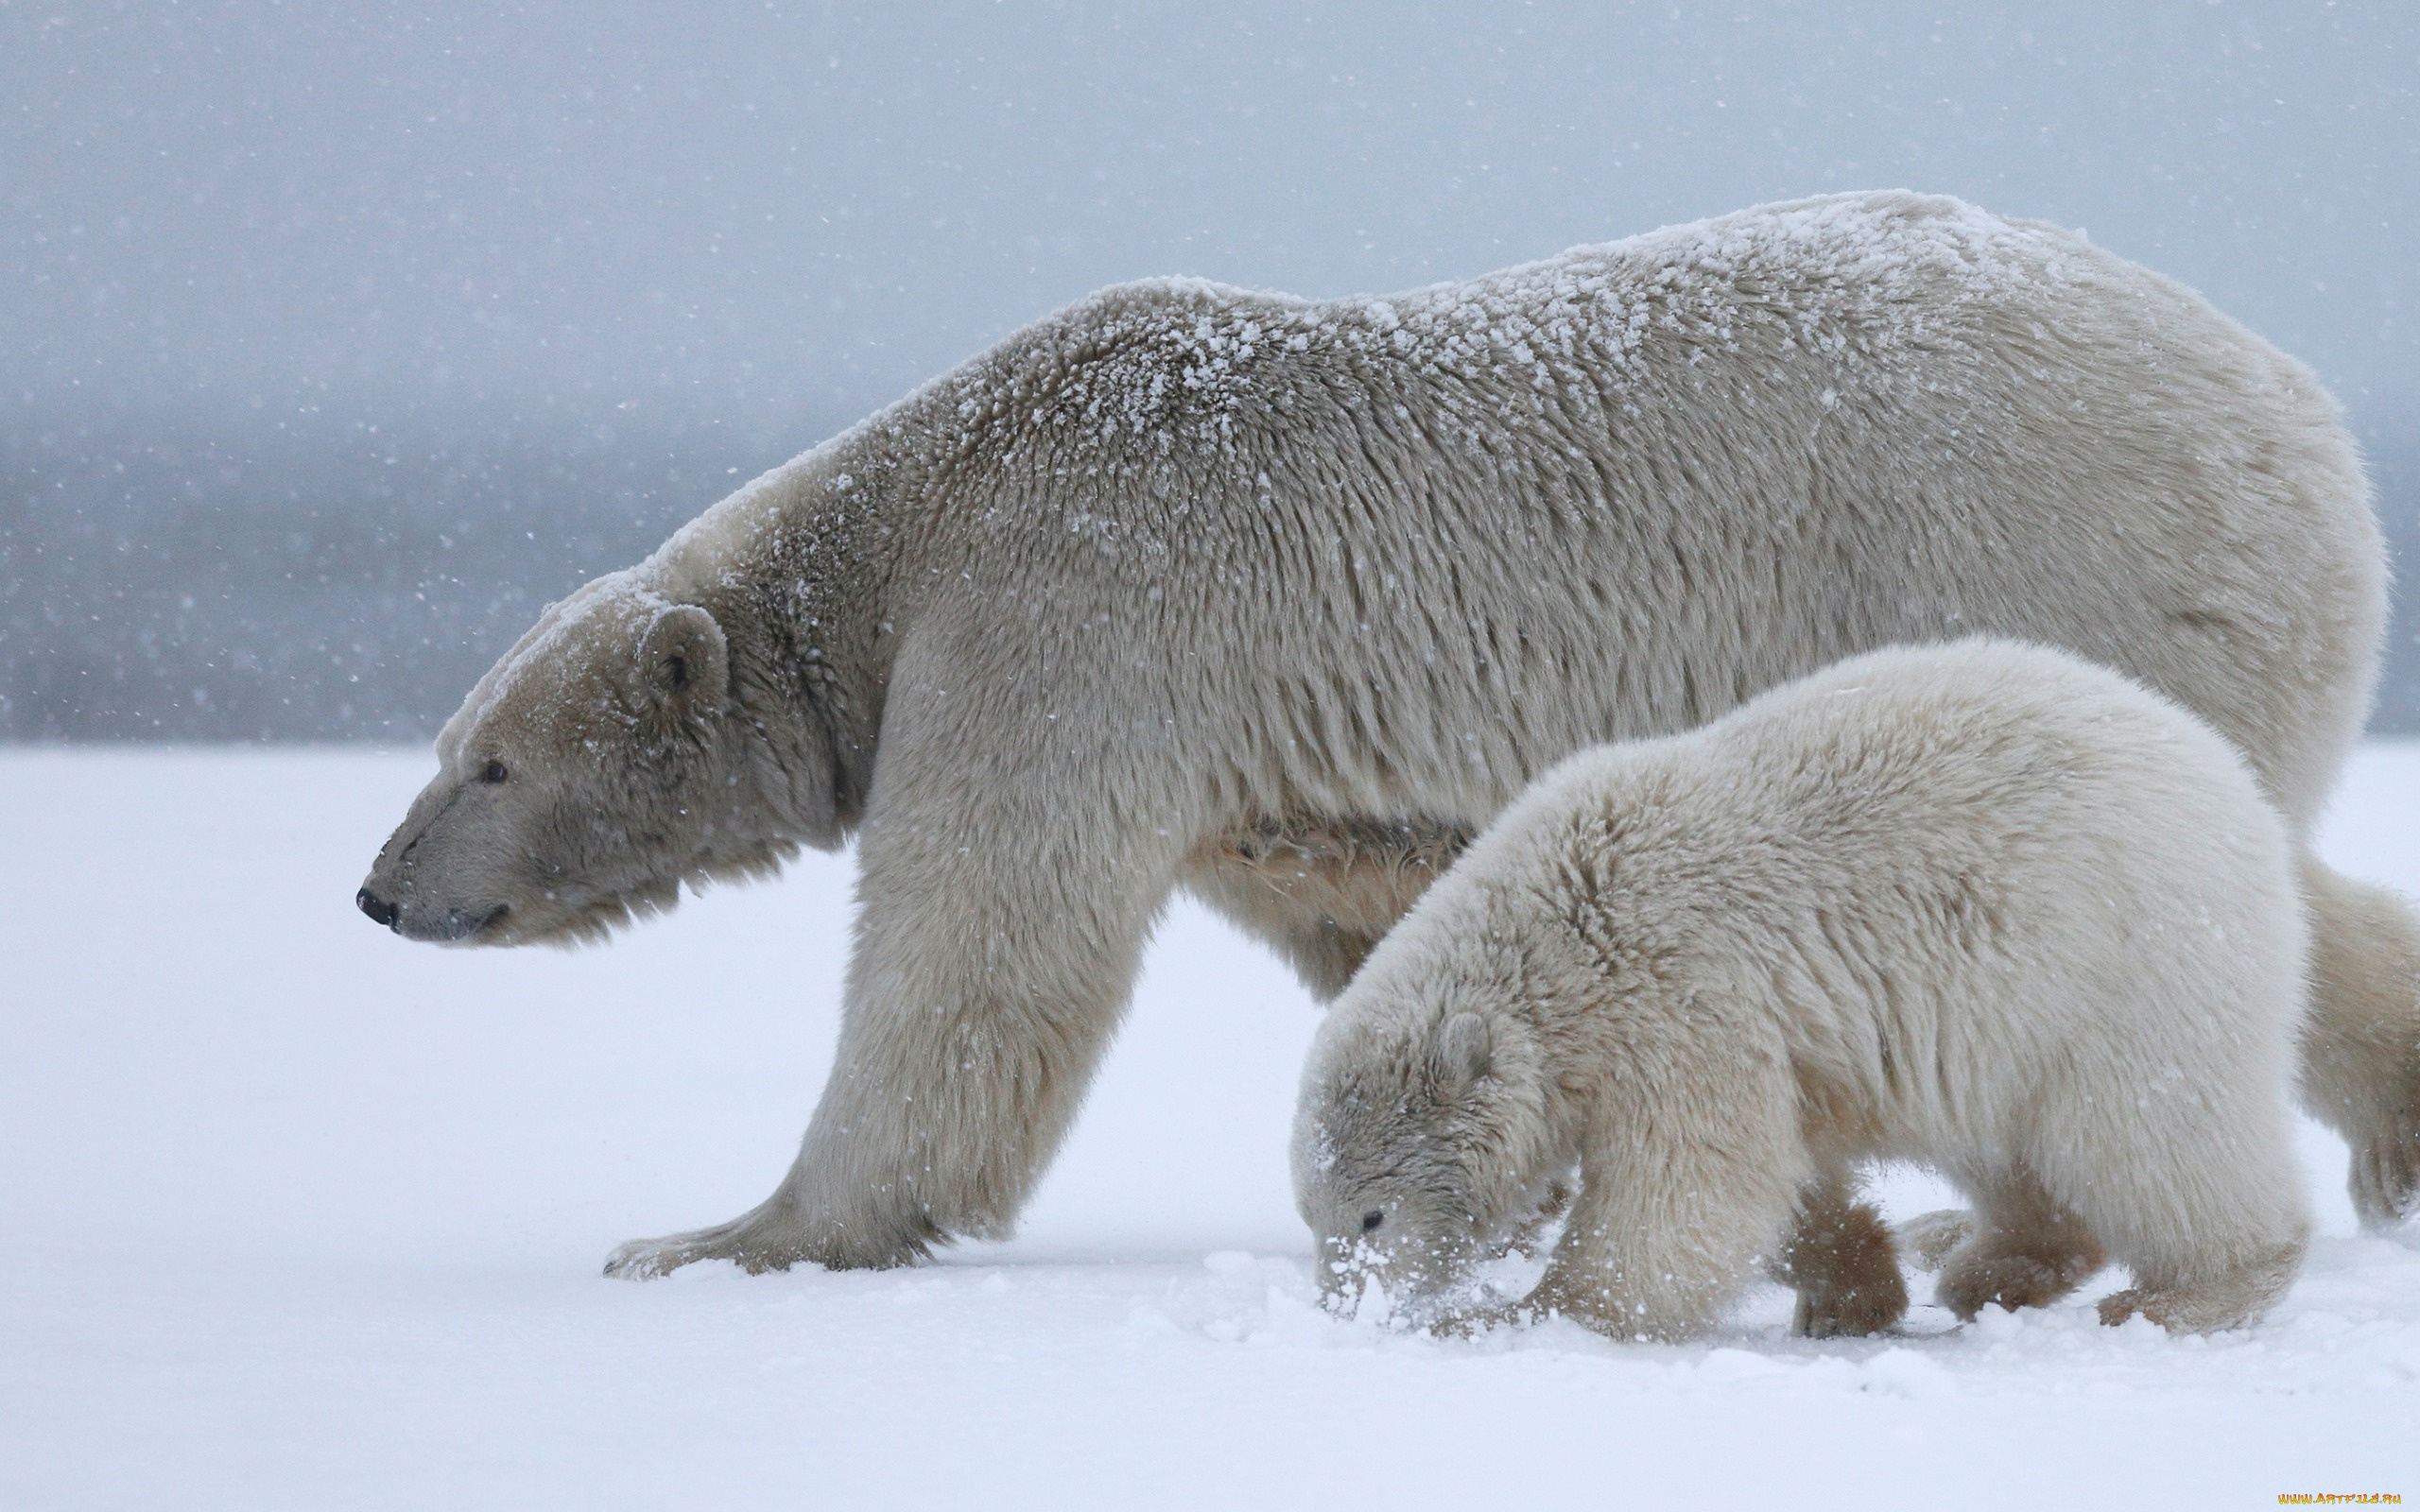 животные, медведи, дитя, снег, медвежонок, рядом, припорошило, вдвоем, полярный, медведь, материнство, арктика, идут, мать, вместе, мишутка, белая, медведица, дикая